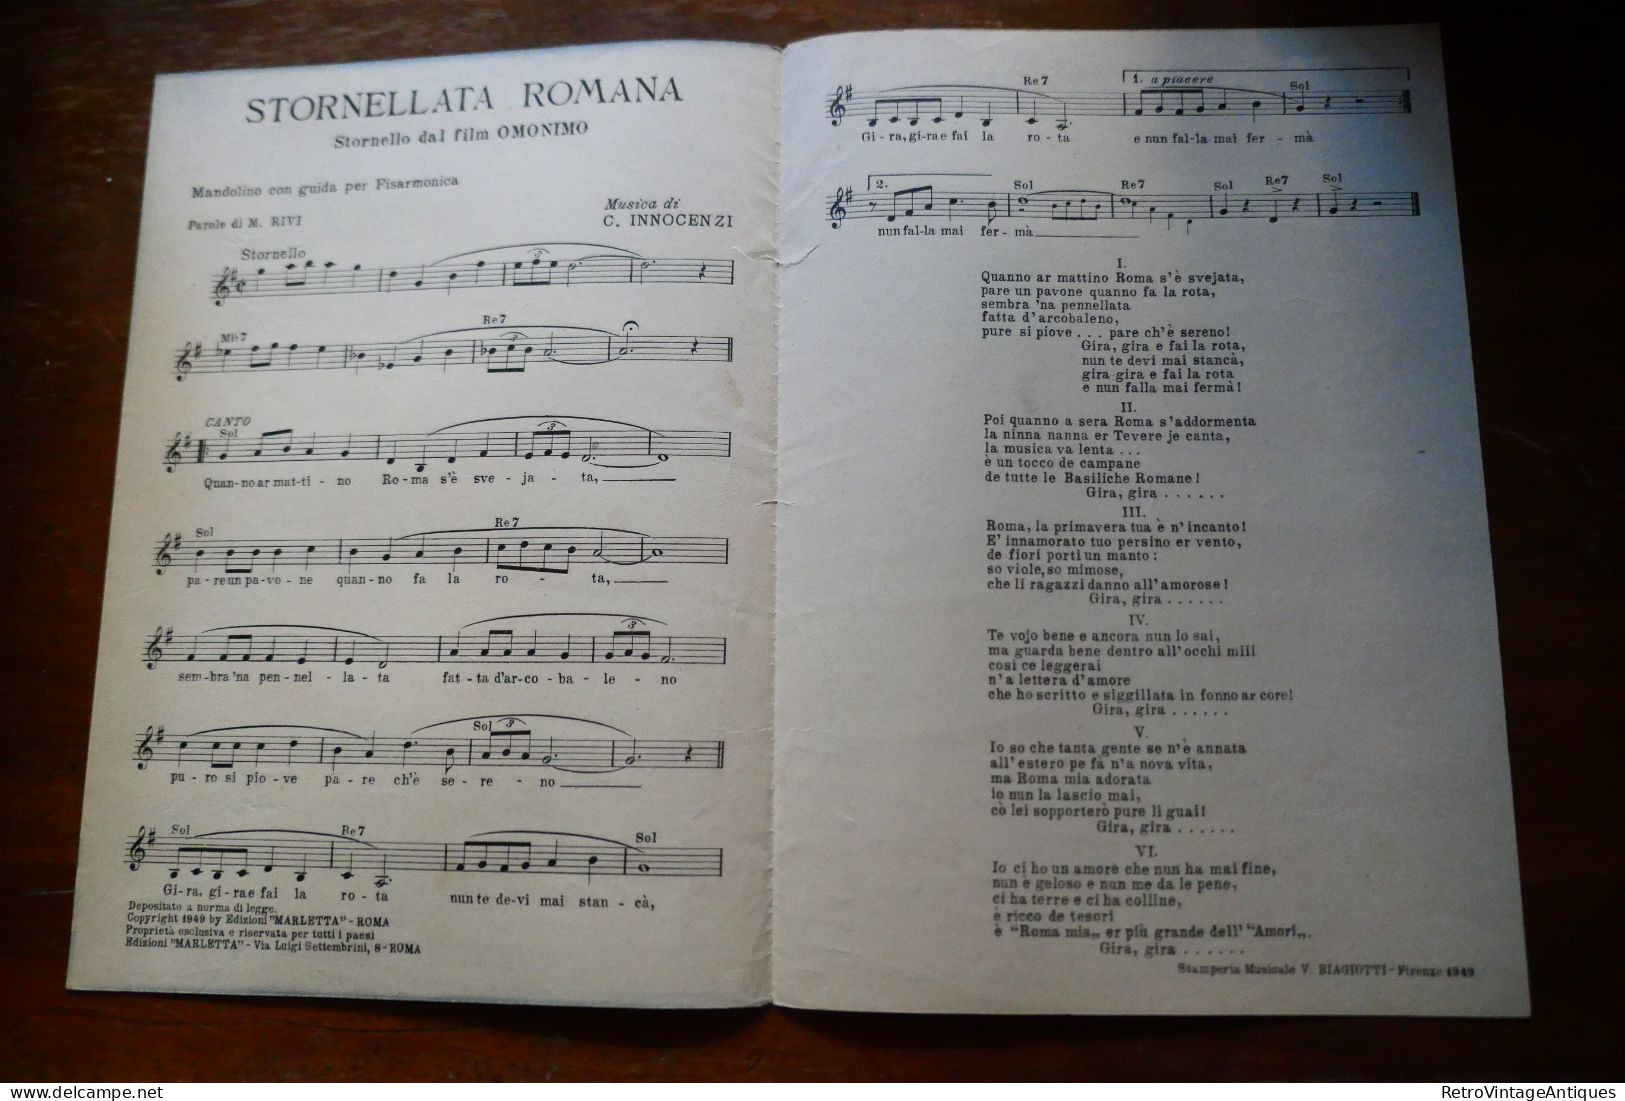 Stornellata Romana Giorgio Graziosi Marcella Rivi Carlo Innocenzi Marletta Partitura Muzicala Veche Romania - Chant Soliste